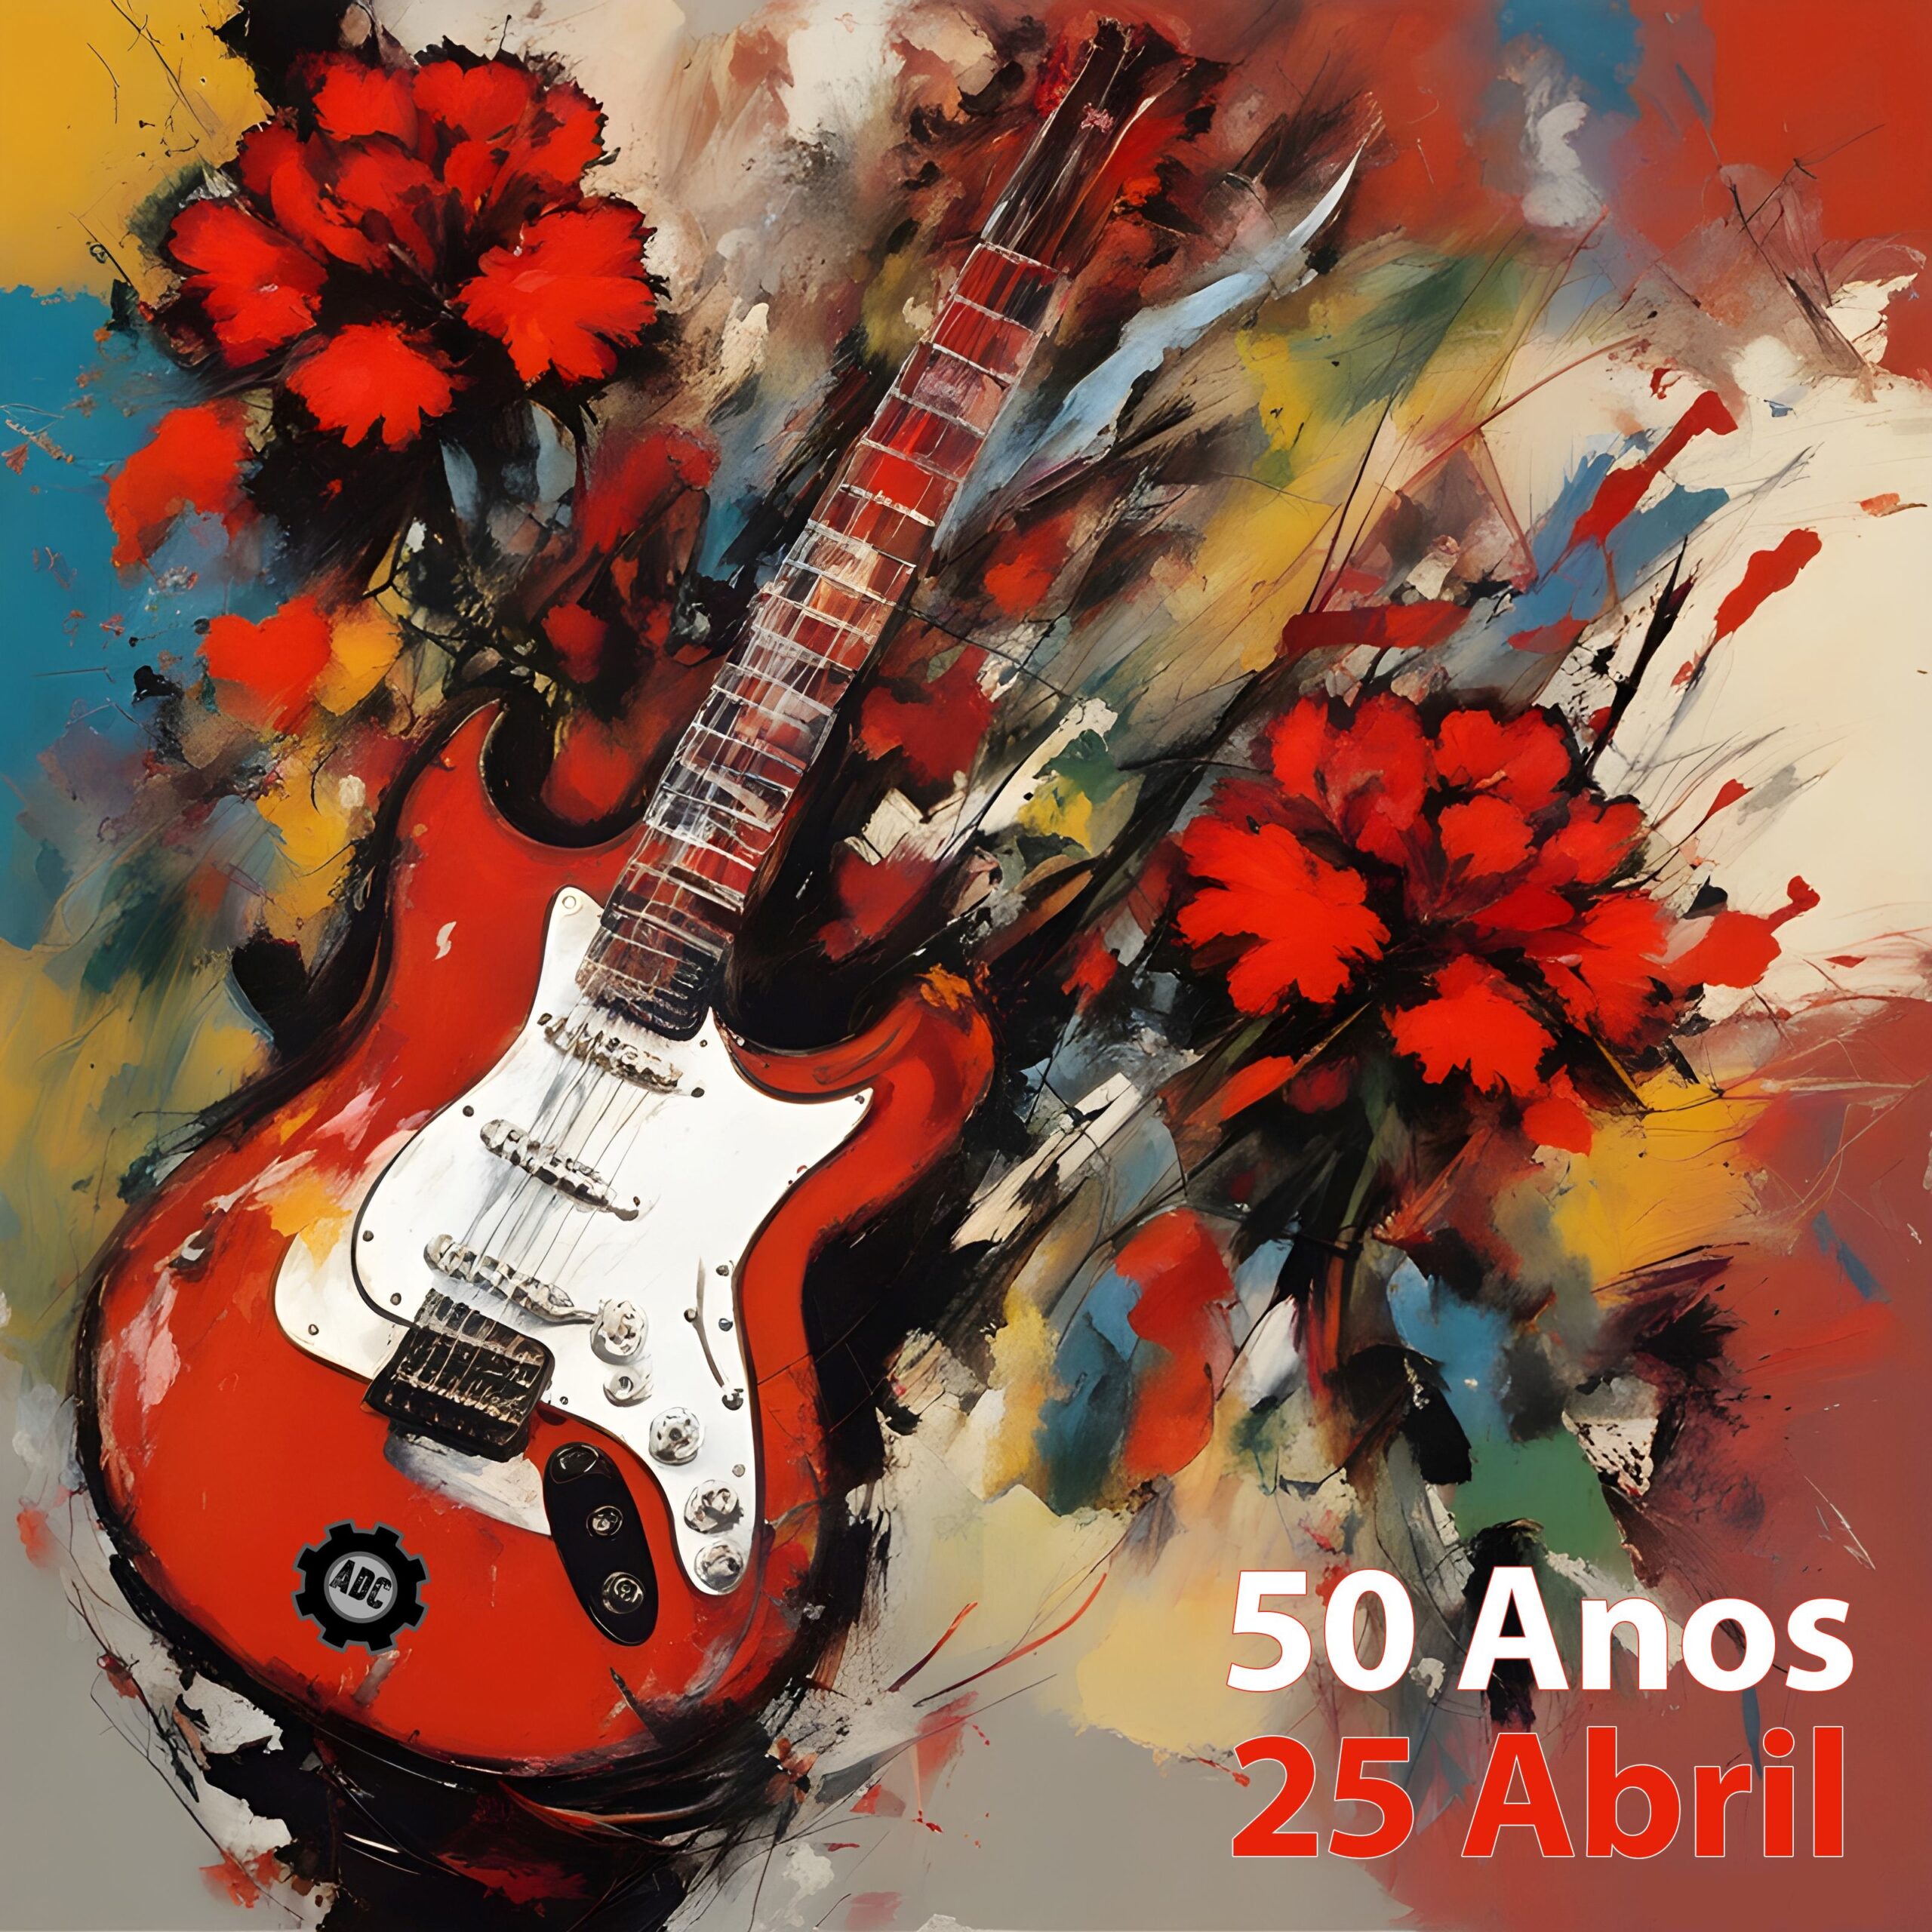 Capa Oficial do Evento 50 Anos - 25 Abril